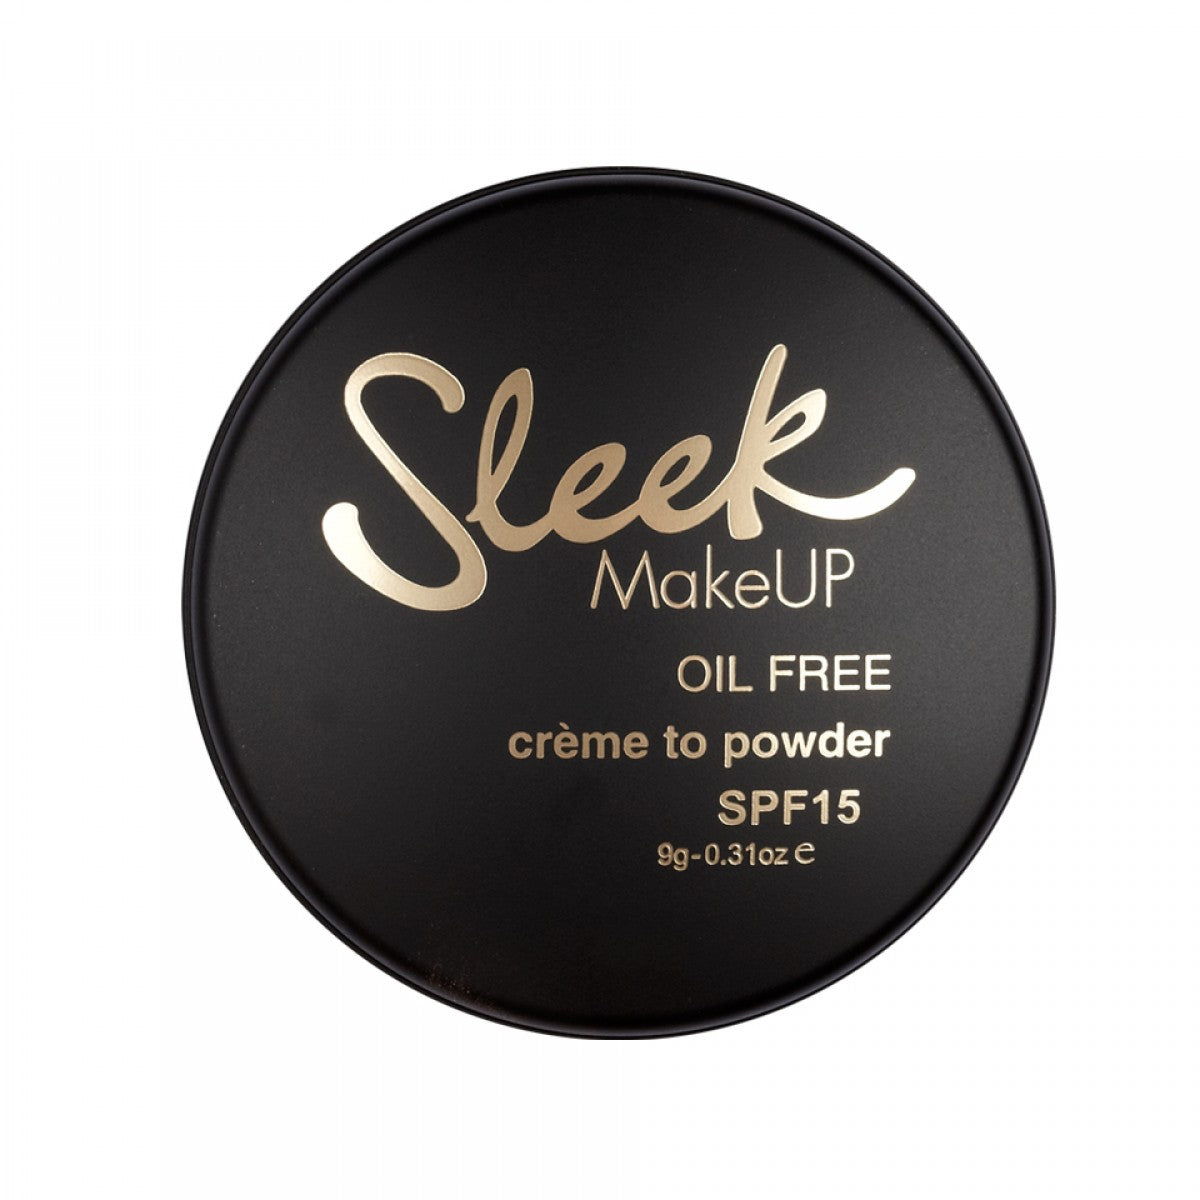 Sleek Make-Up Creme To Powder Foundation